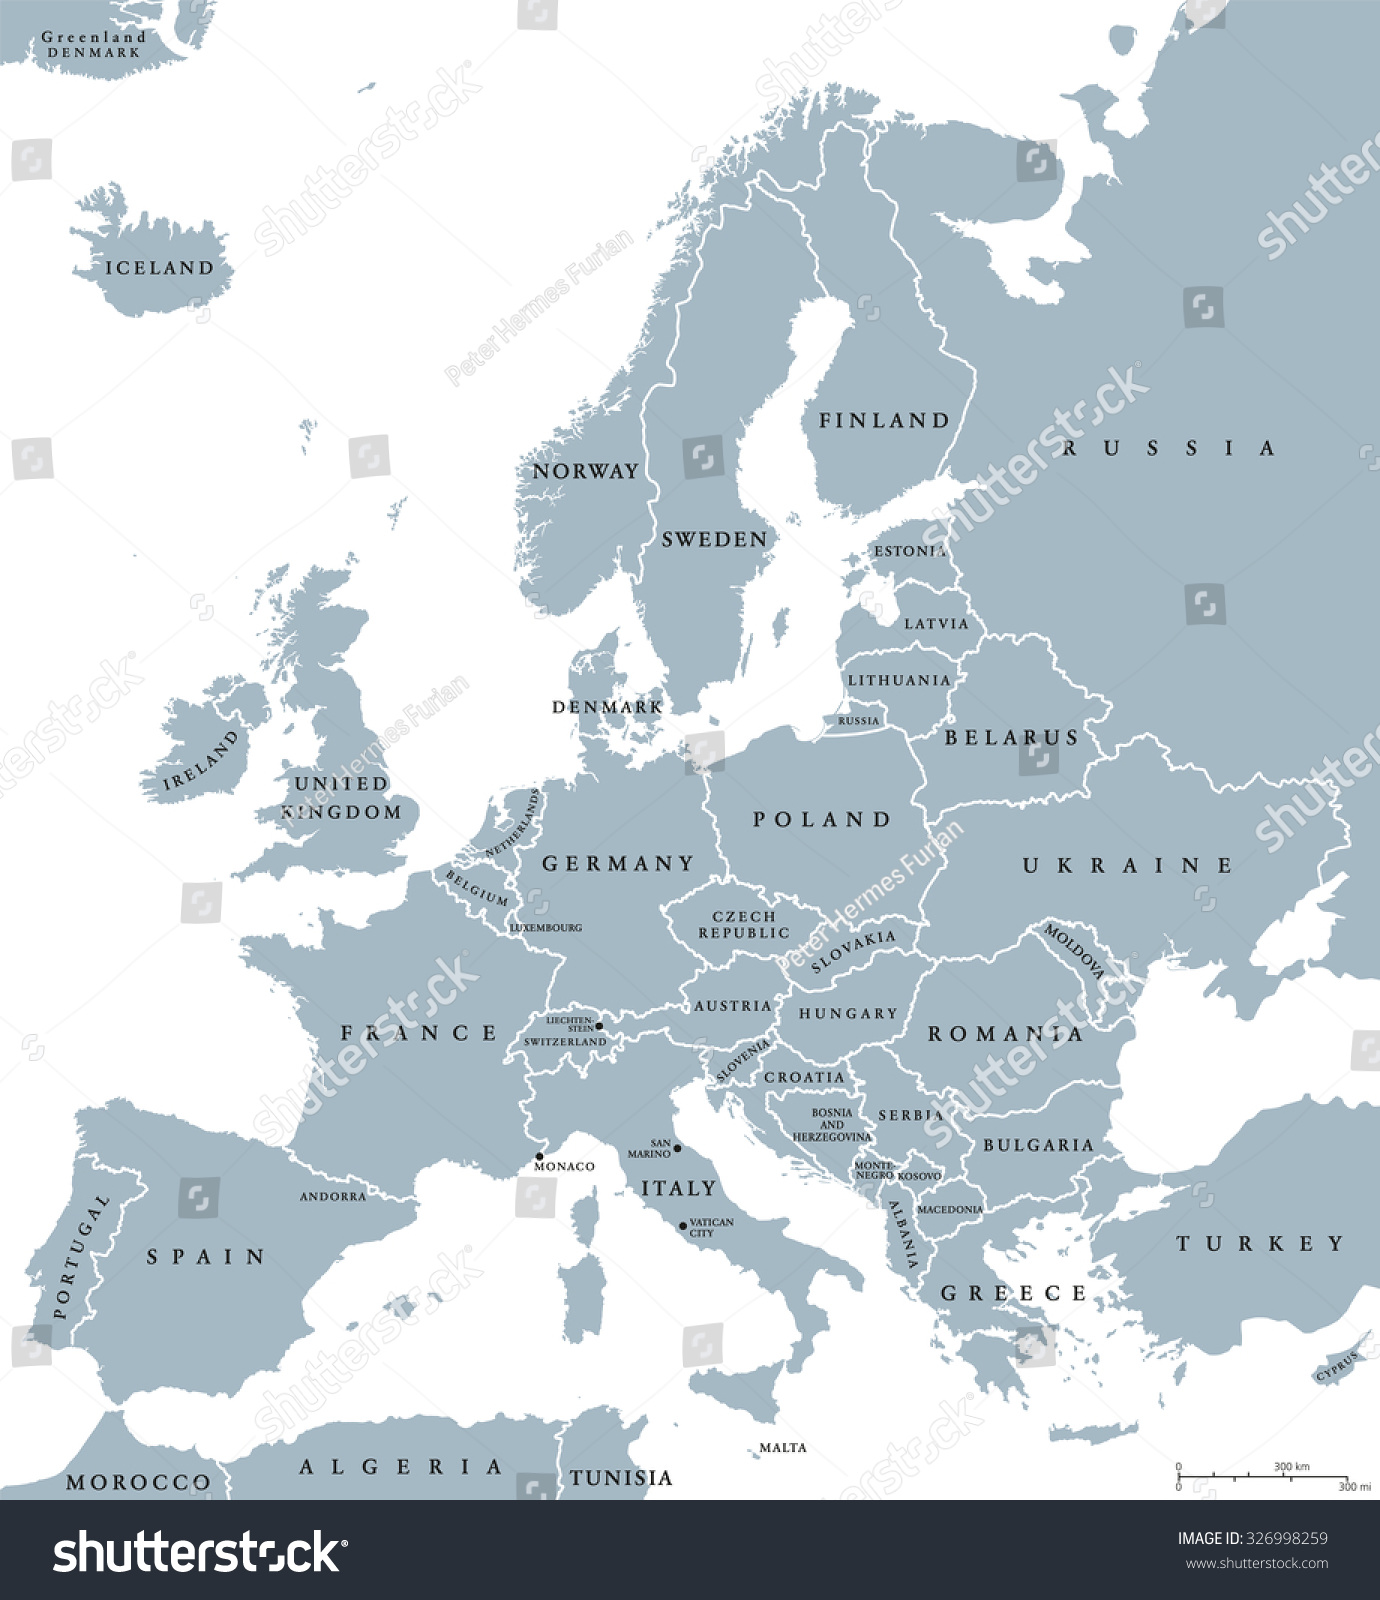 洲国家的政治地图国界和国家名称。英语标识和